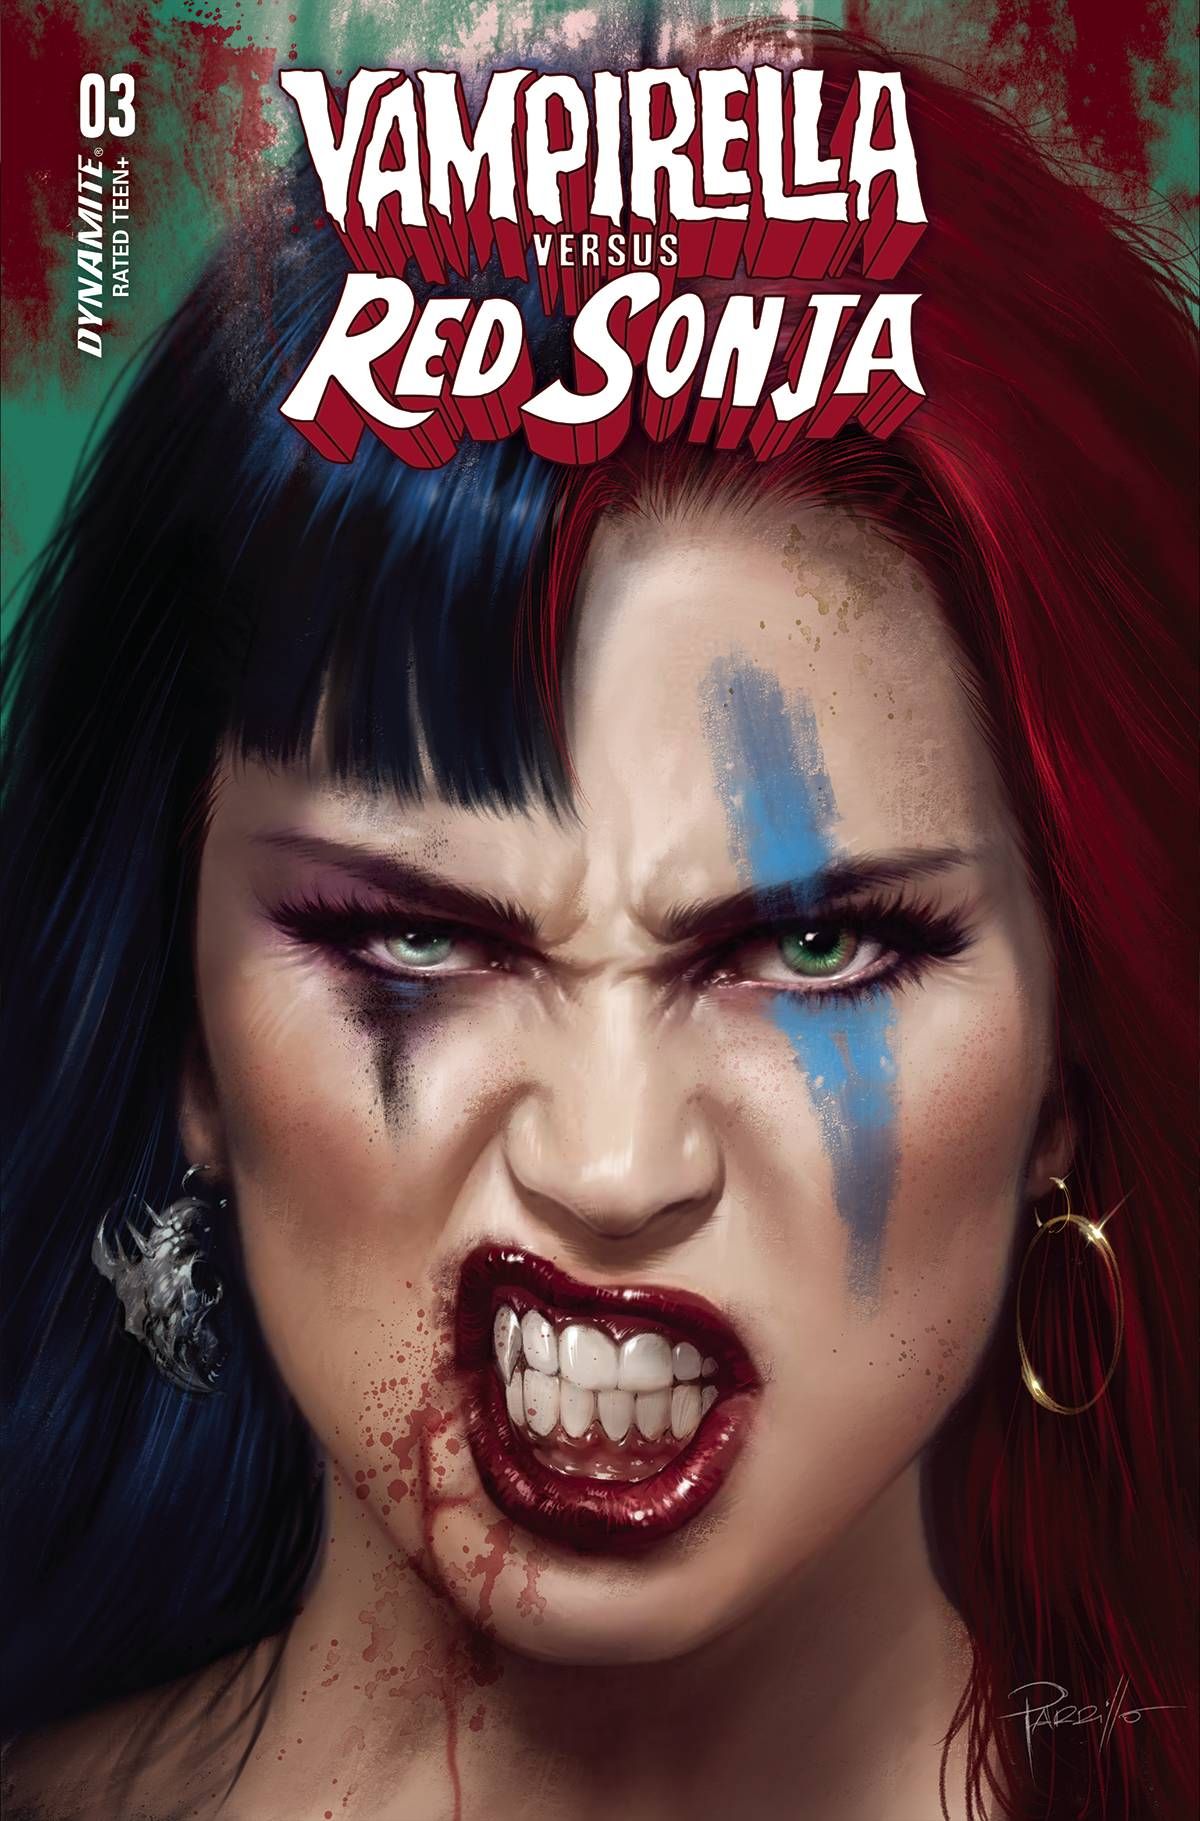 Vampirella vs. Red Sonja #3 Comic